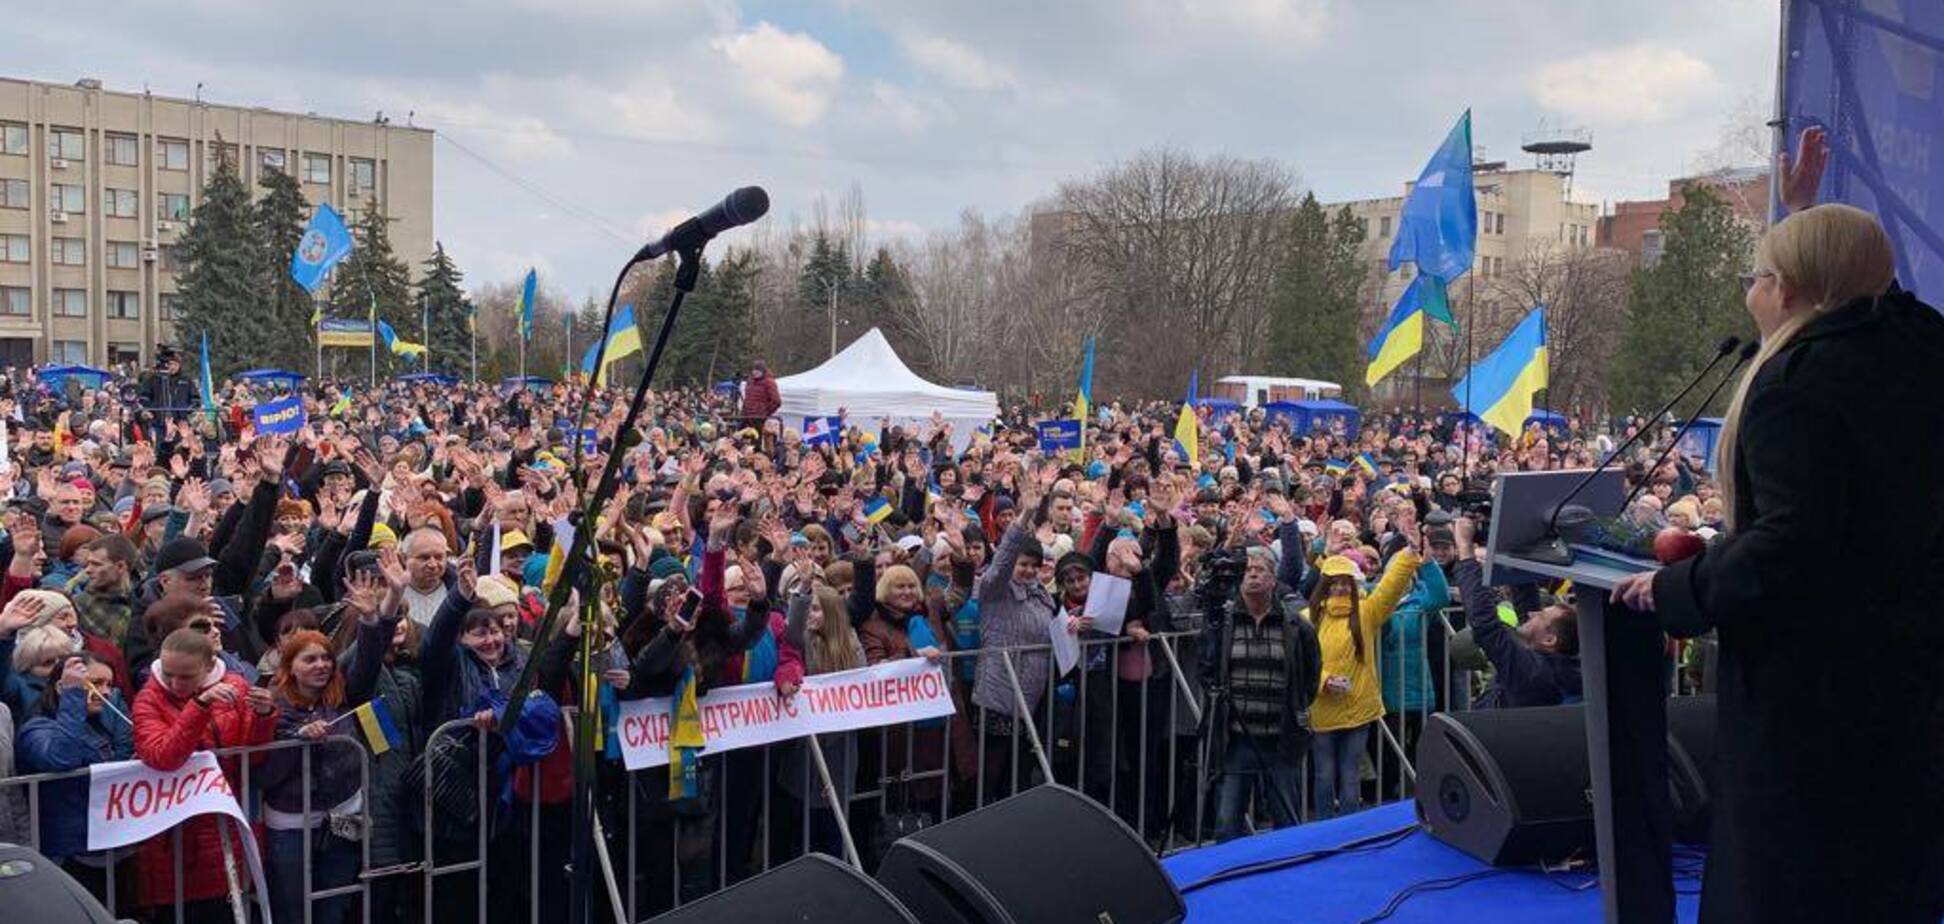 Тимошенко в Славянске: чтобы достичь мира, мы должны объединиться и действовать